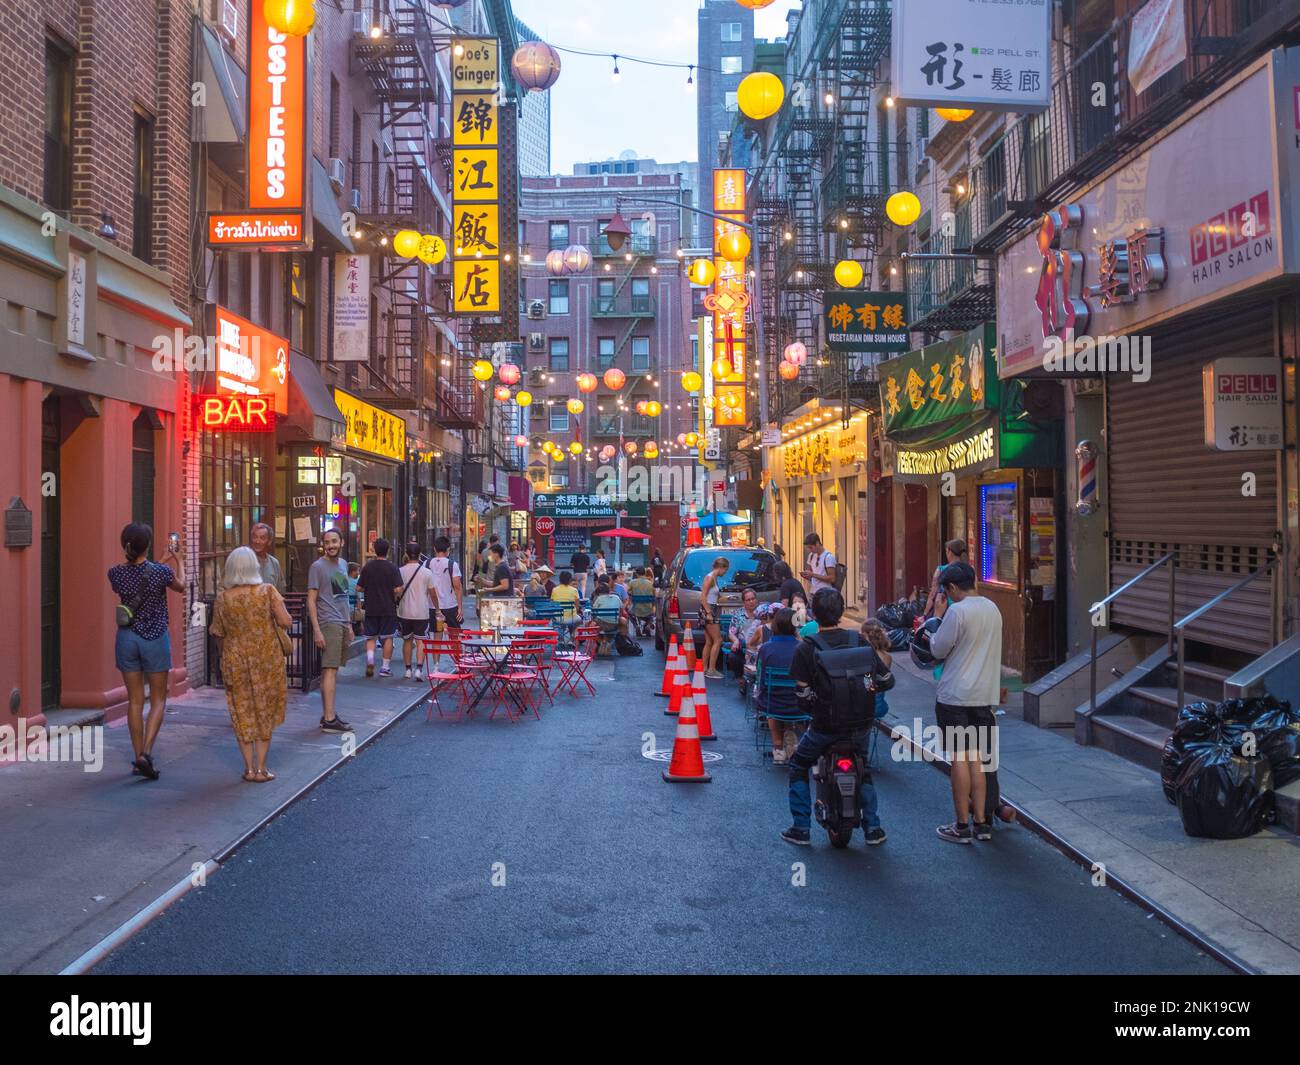 New York City, Stati Uniti - 21 agosto 2022: Una strada della Chinatown di New York City all'alba con luci e lanterne accese e un po' di peopl Foto Stock